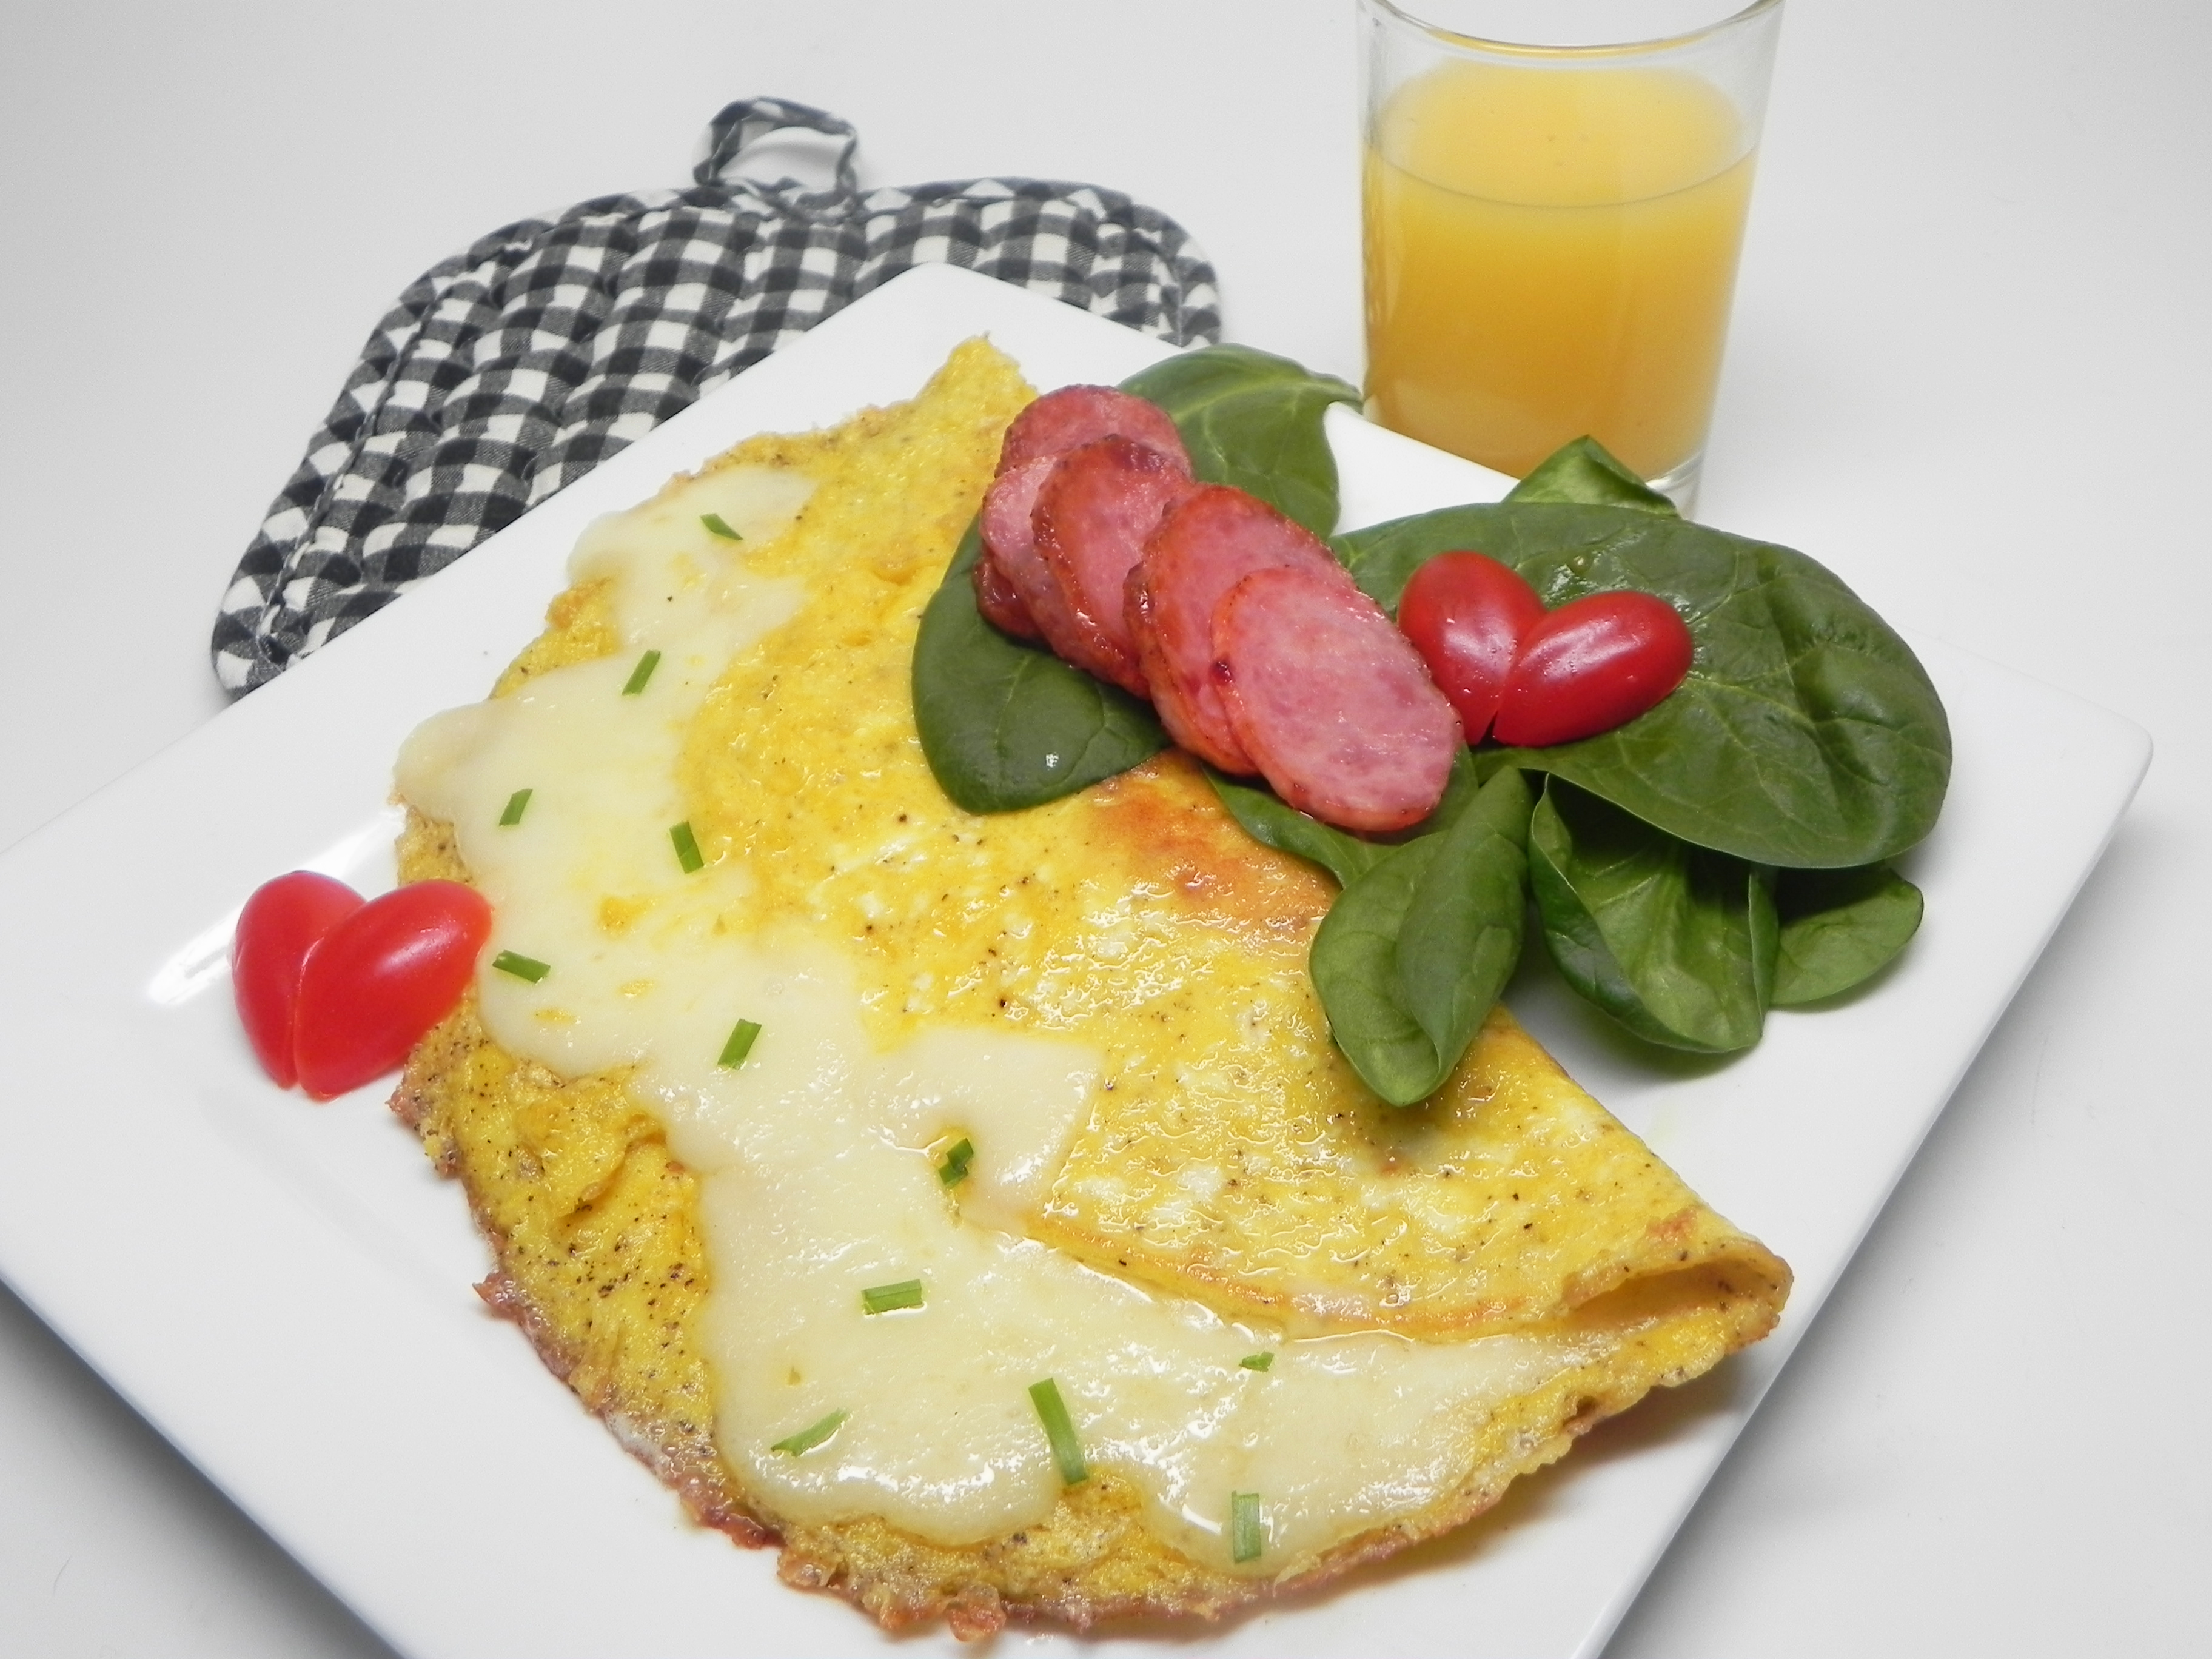 Cheese Omelette Recipe Allrecipes,Quinoa Protein Content Per 100g